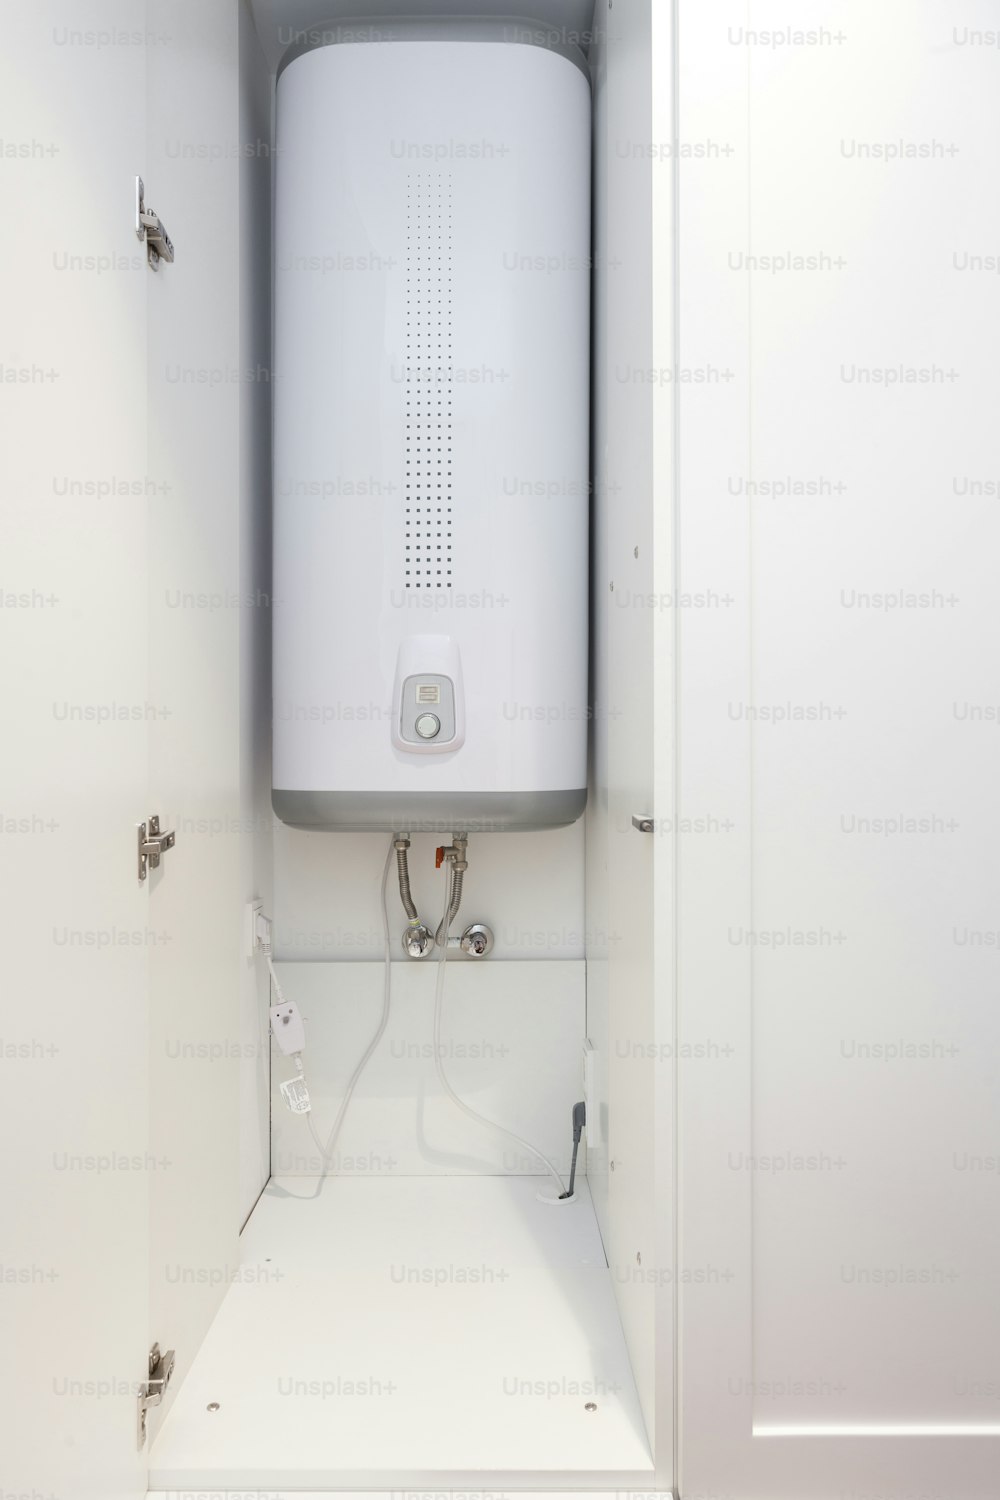 Caldeira elétrica (aquecedor de água de parede) no banheiro